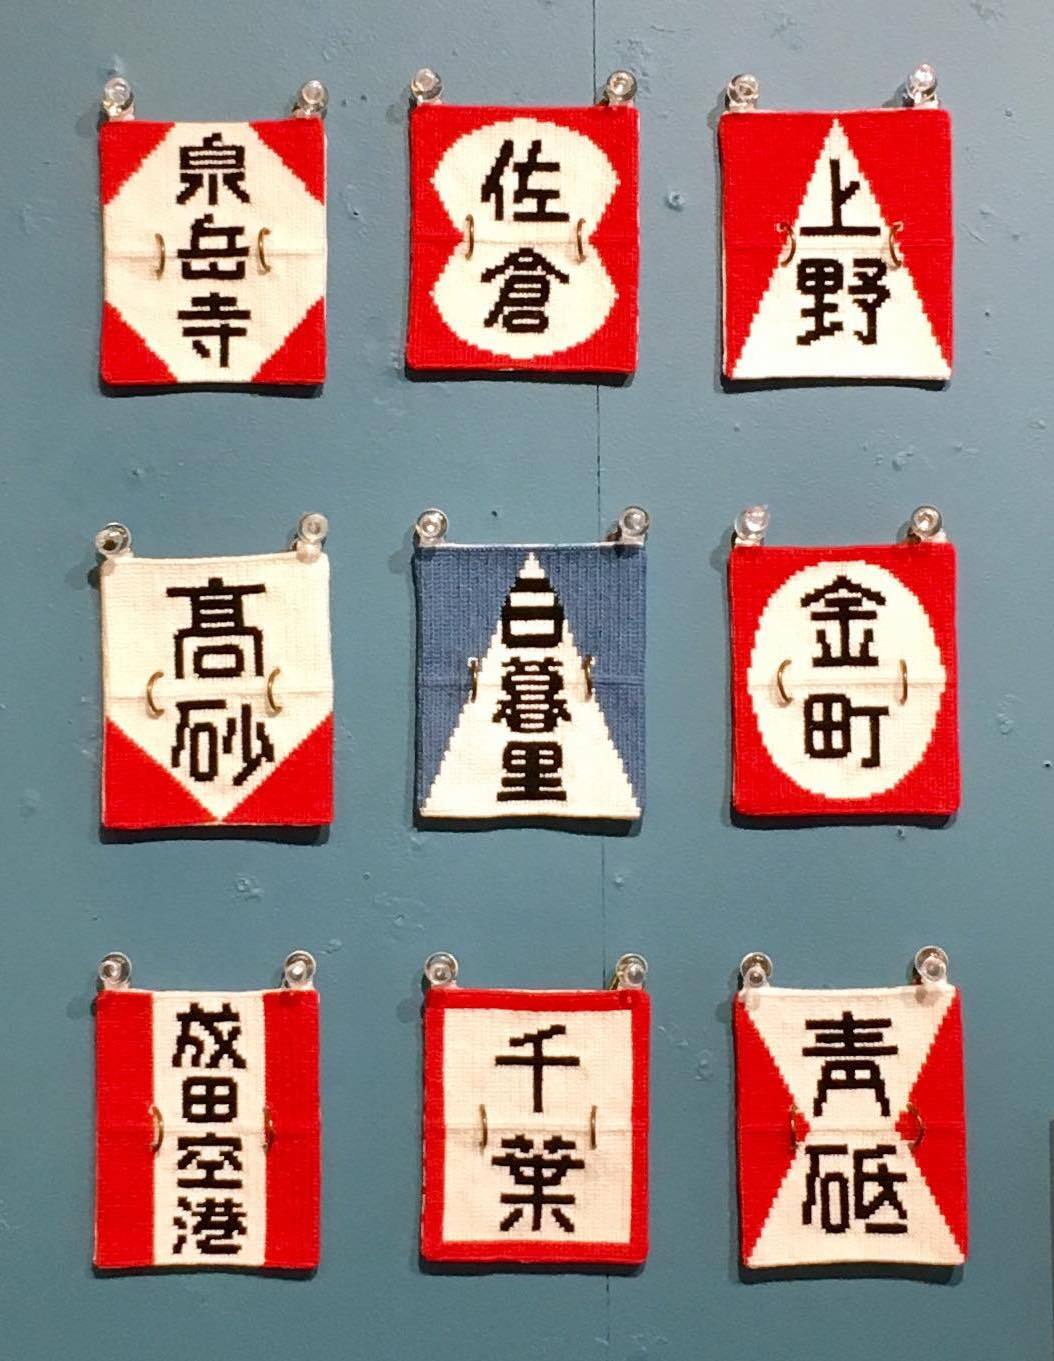 スハネフ「京成電鉄 行き先表示板」タペストリー | ピカユナ製作所